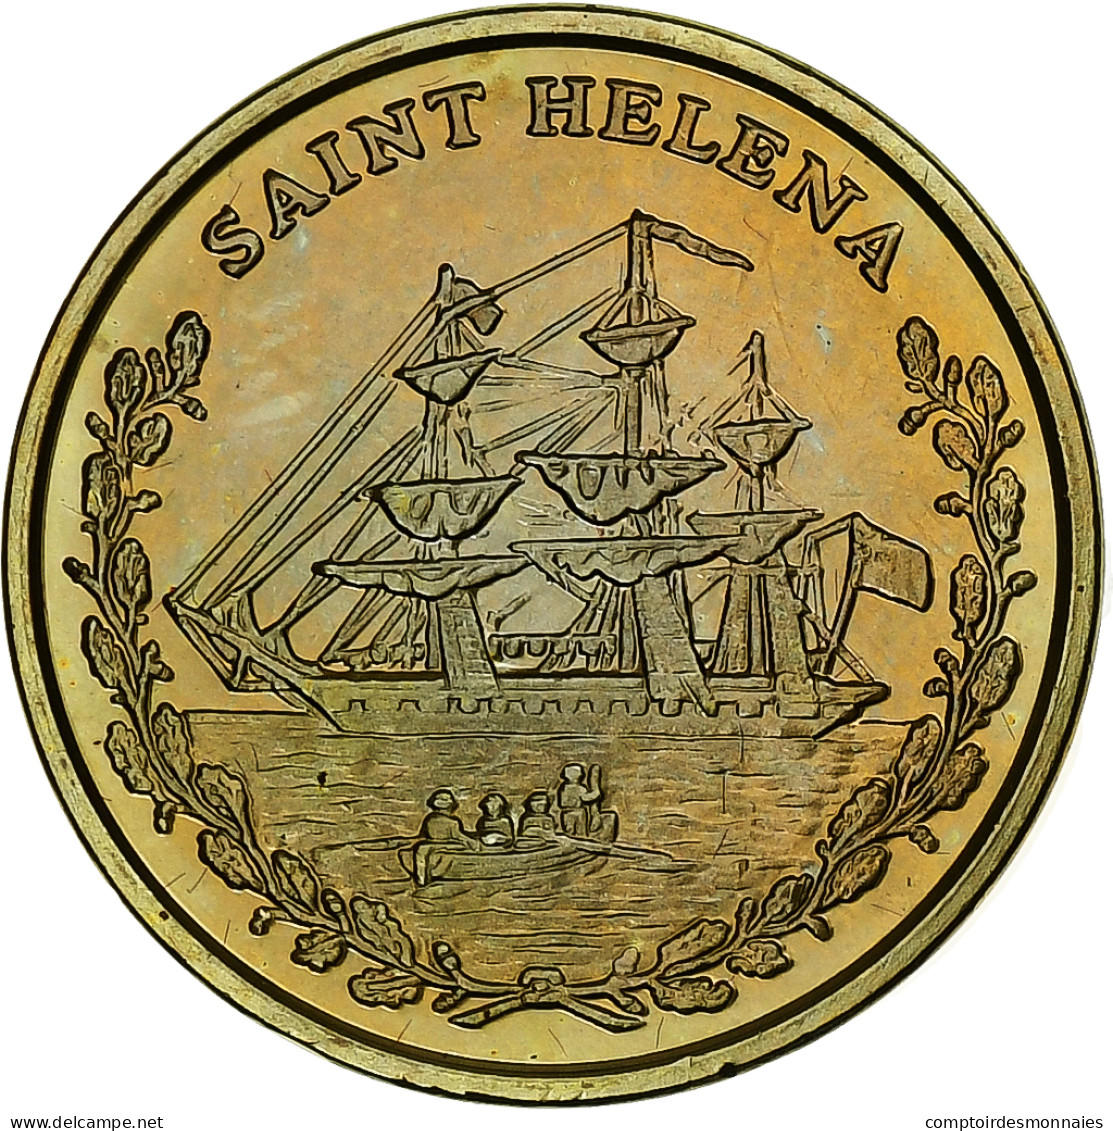 Sainte-Hélène, 10 Euro Cent, Fantasy Euro Patterns, Essai-Trial, BE, Laiton - Private Proofs / Unofficial